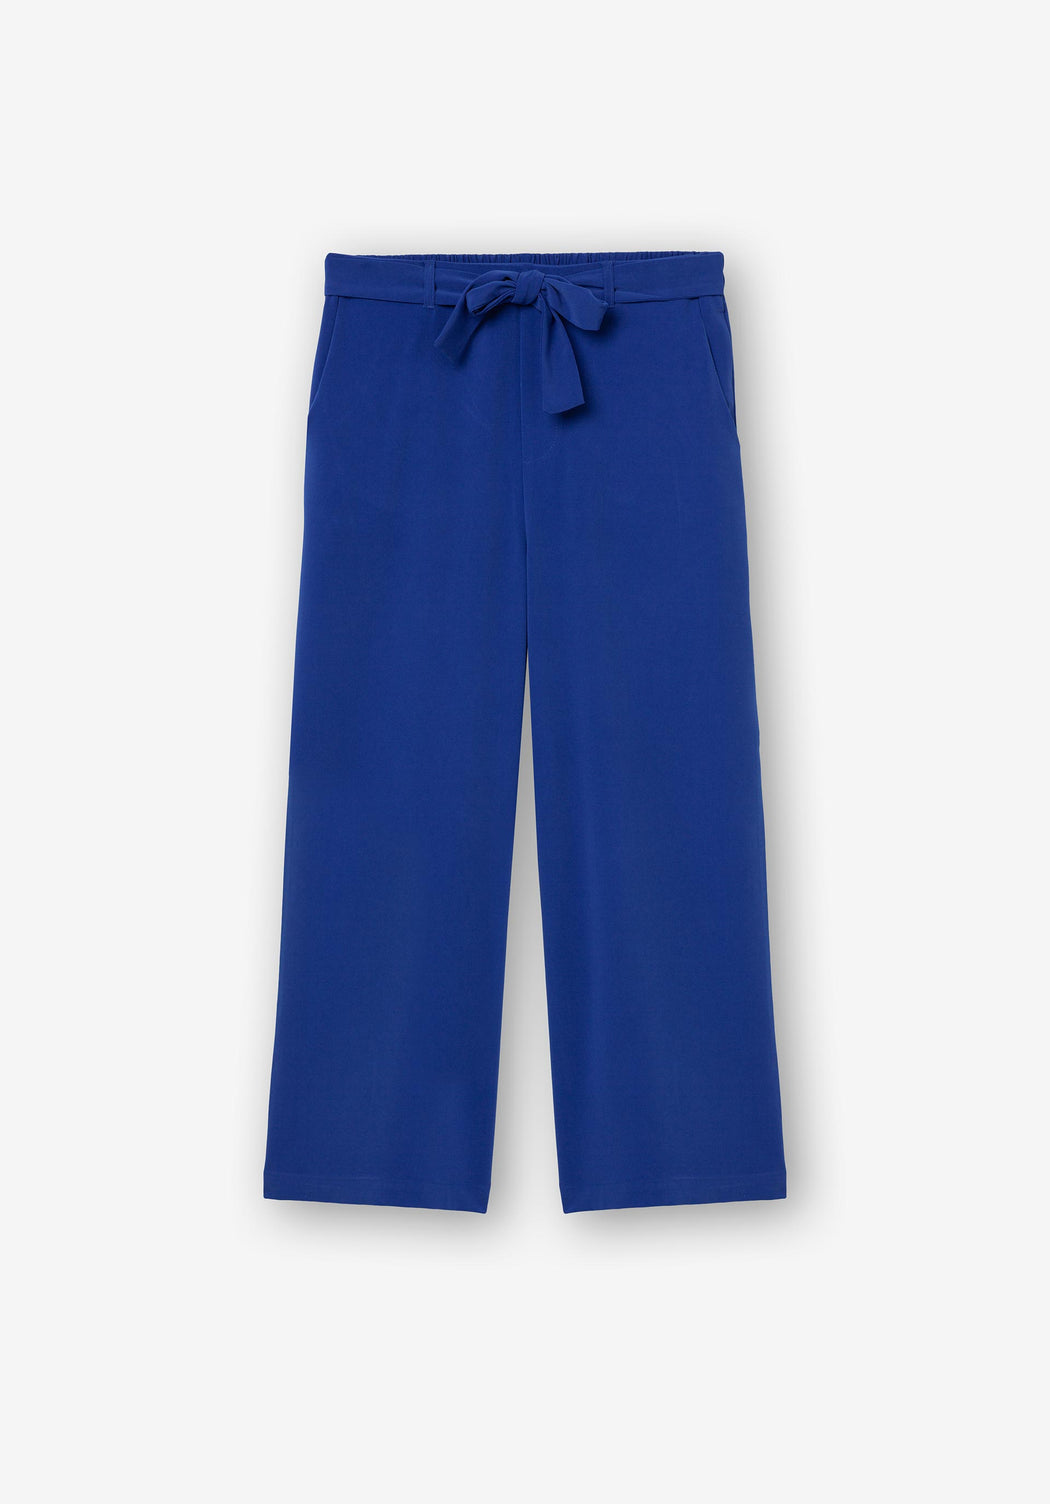 Gaspar cobalt blue trousers